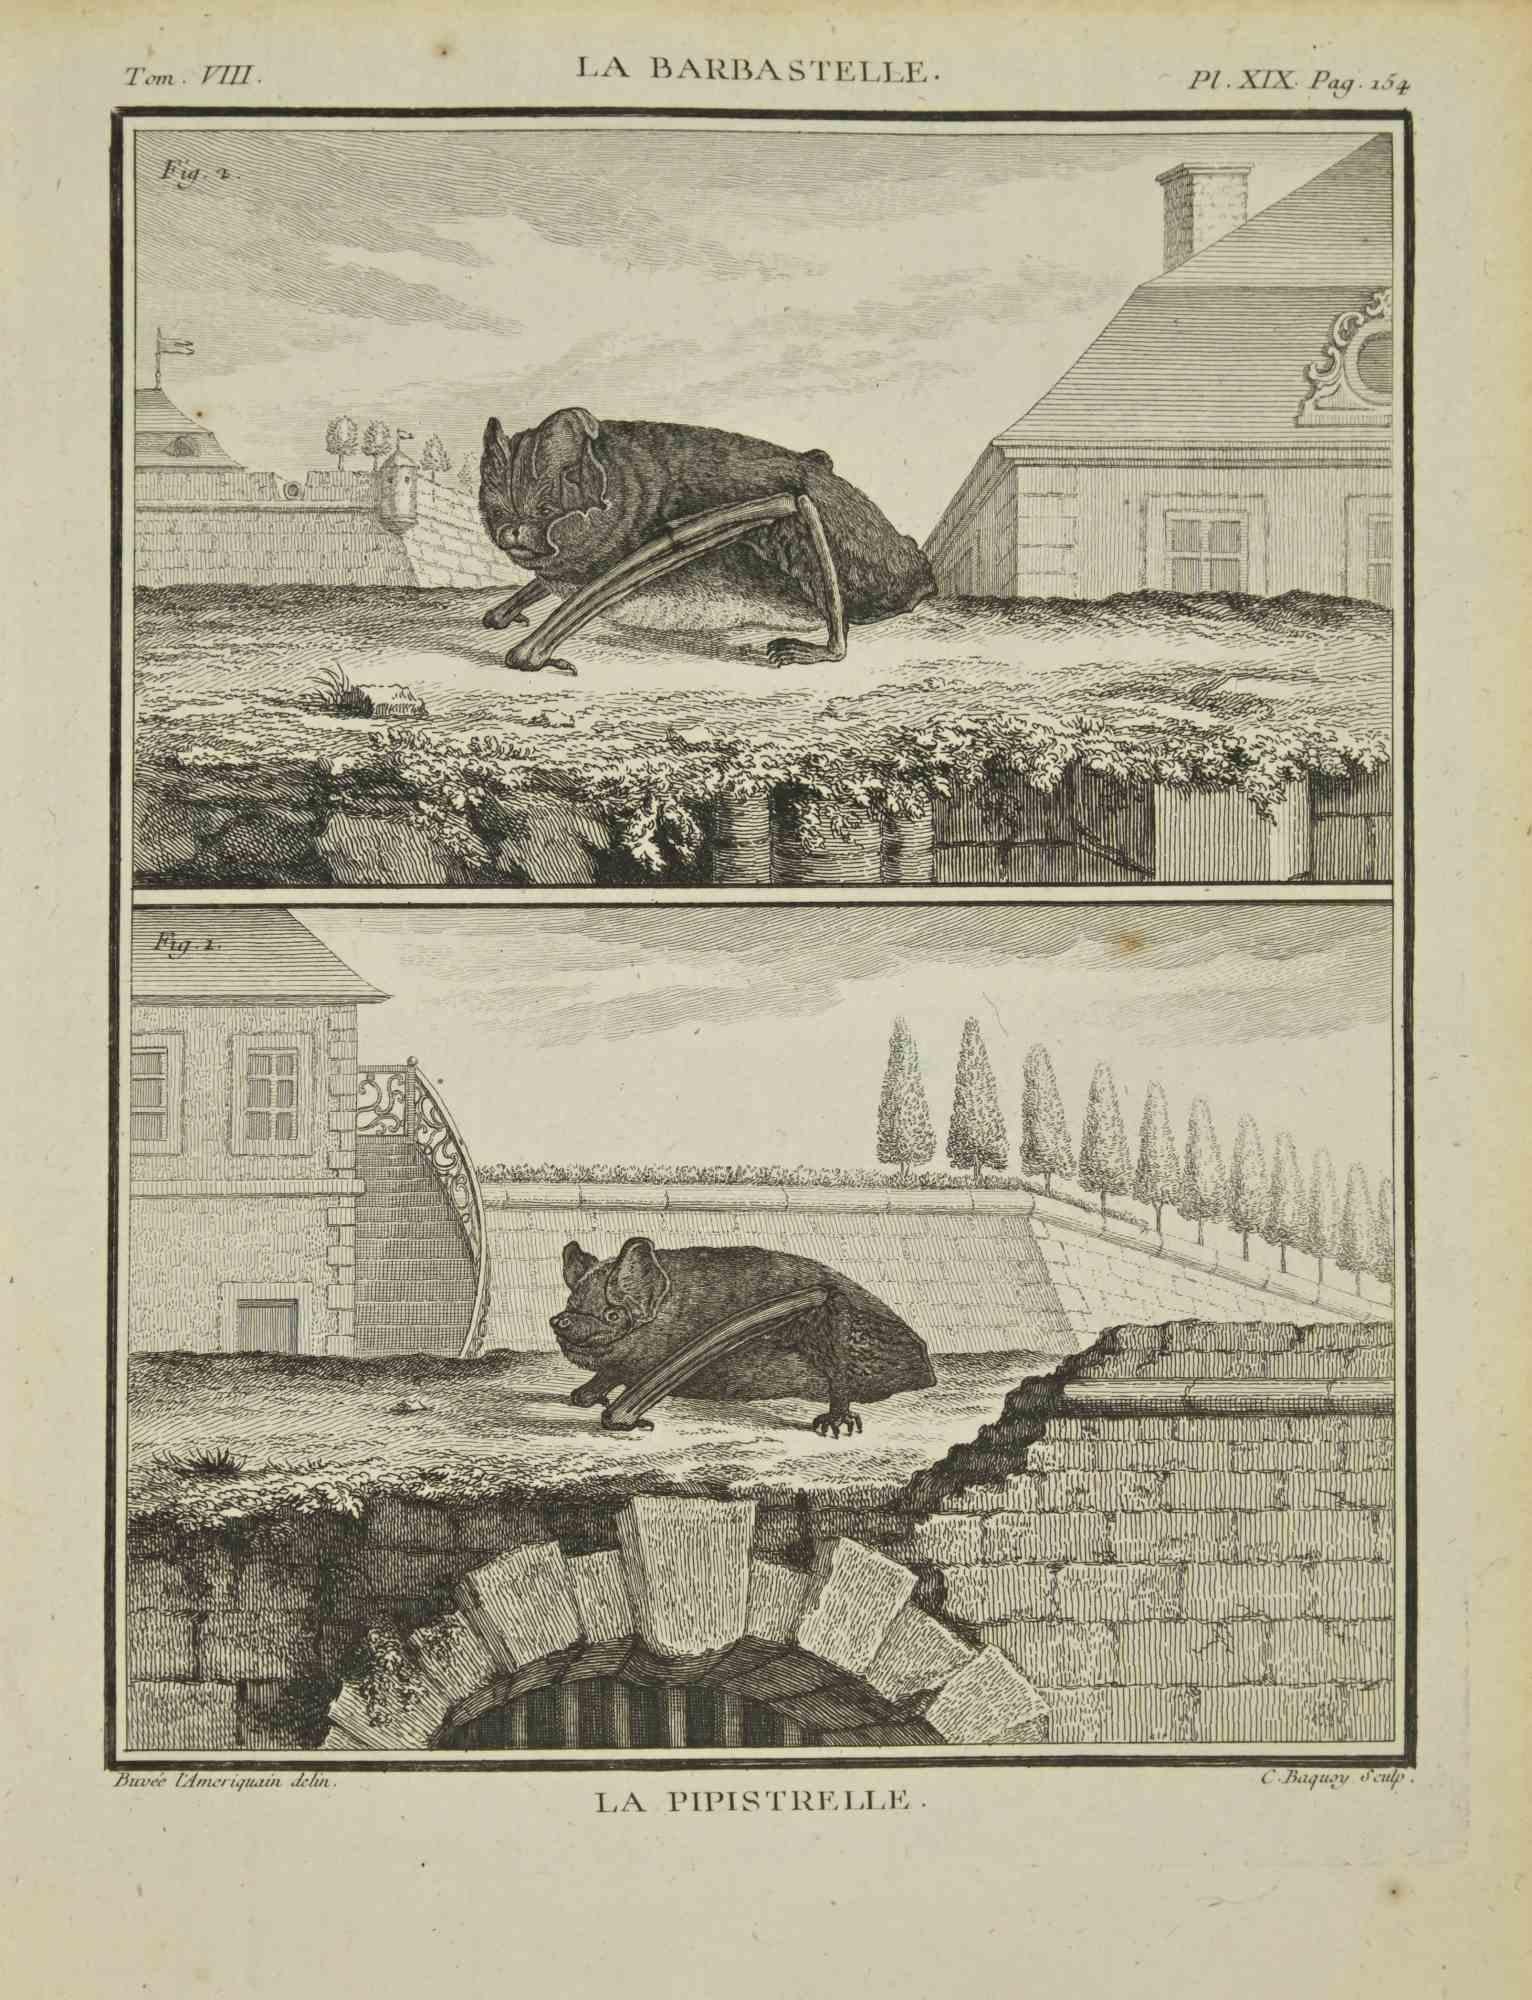 La Pipistrelle ist eine Radierung von Jean Charles Baquoy aus dem Jahr 1771.

Es gehört zu der Reihe "Histoire Naturelle de Buffon".

Die Signatur des Künstlers ist unten rechts eingraviert.

Guter Zustand mit leichten Stockflecken.
